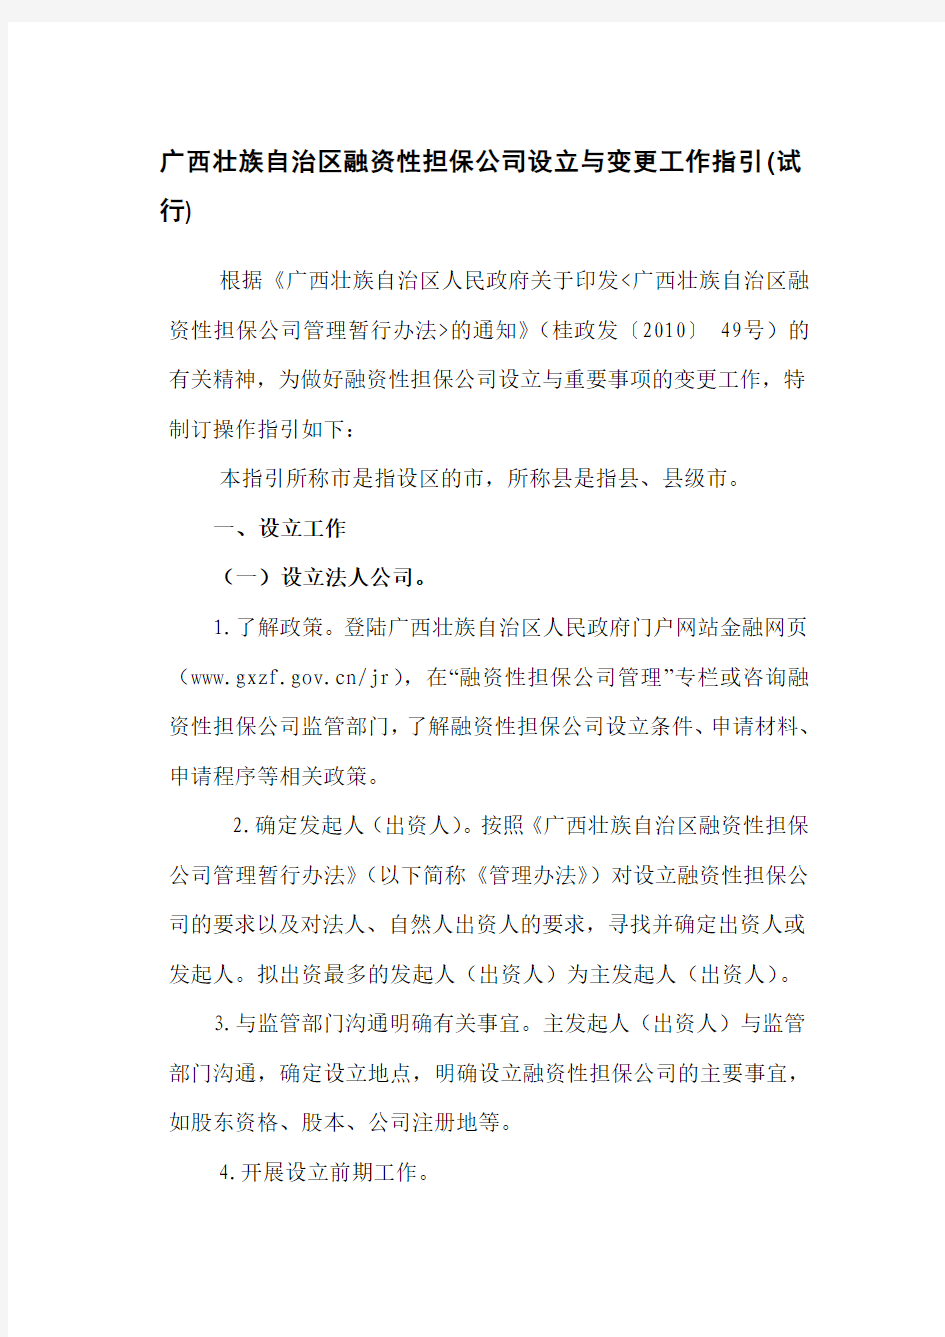 广西壮族自治区融资性担保公司设立与变更工作指引(试行)